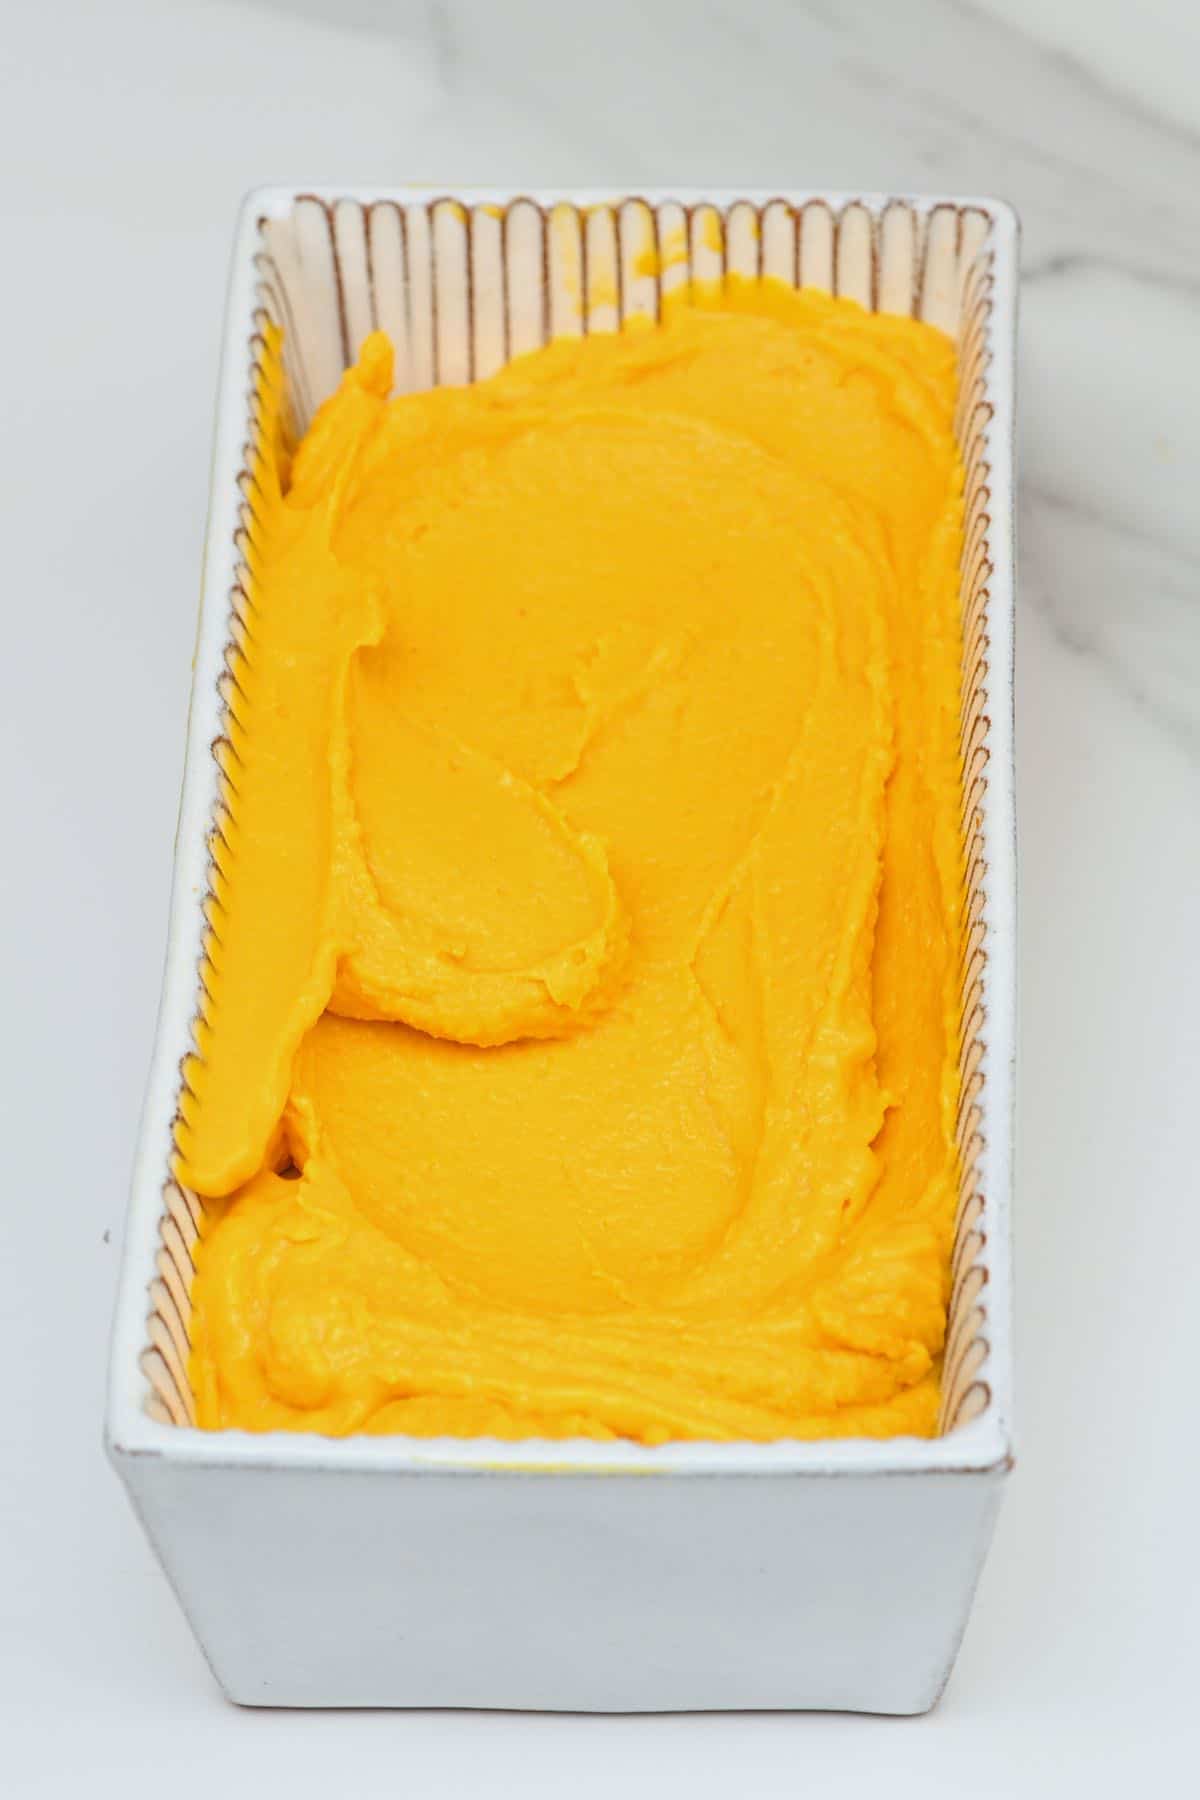 Mango ice cream in a tin